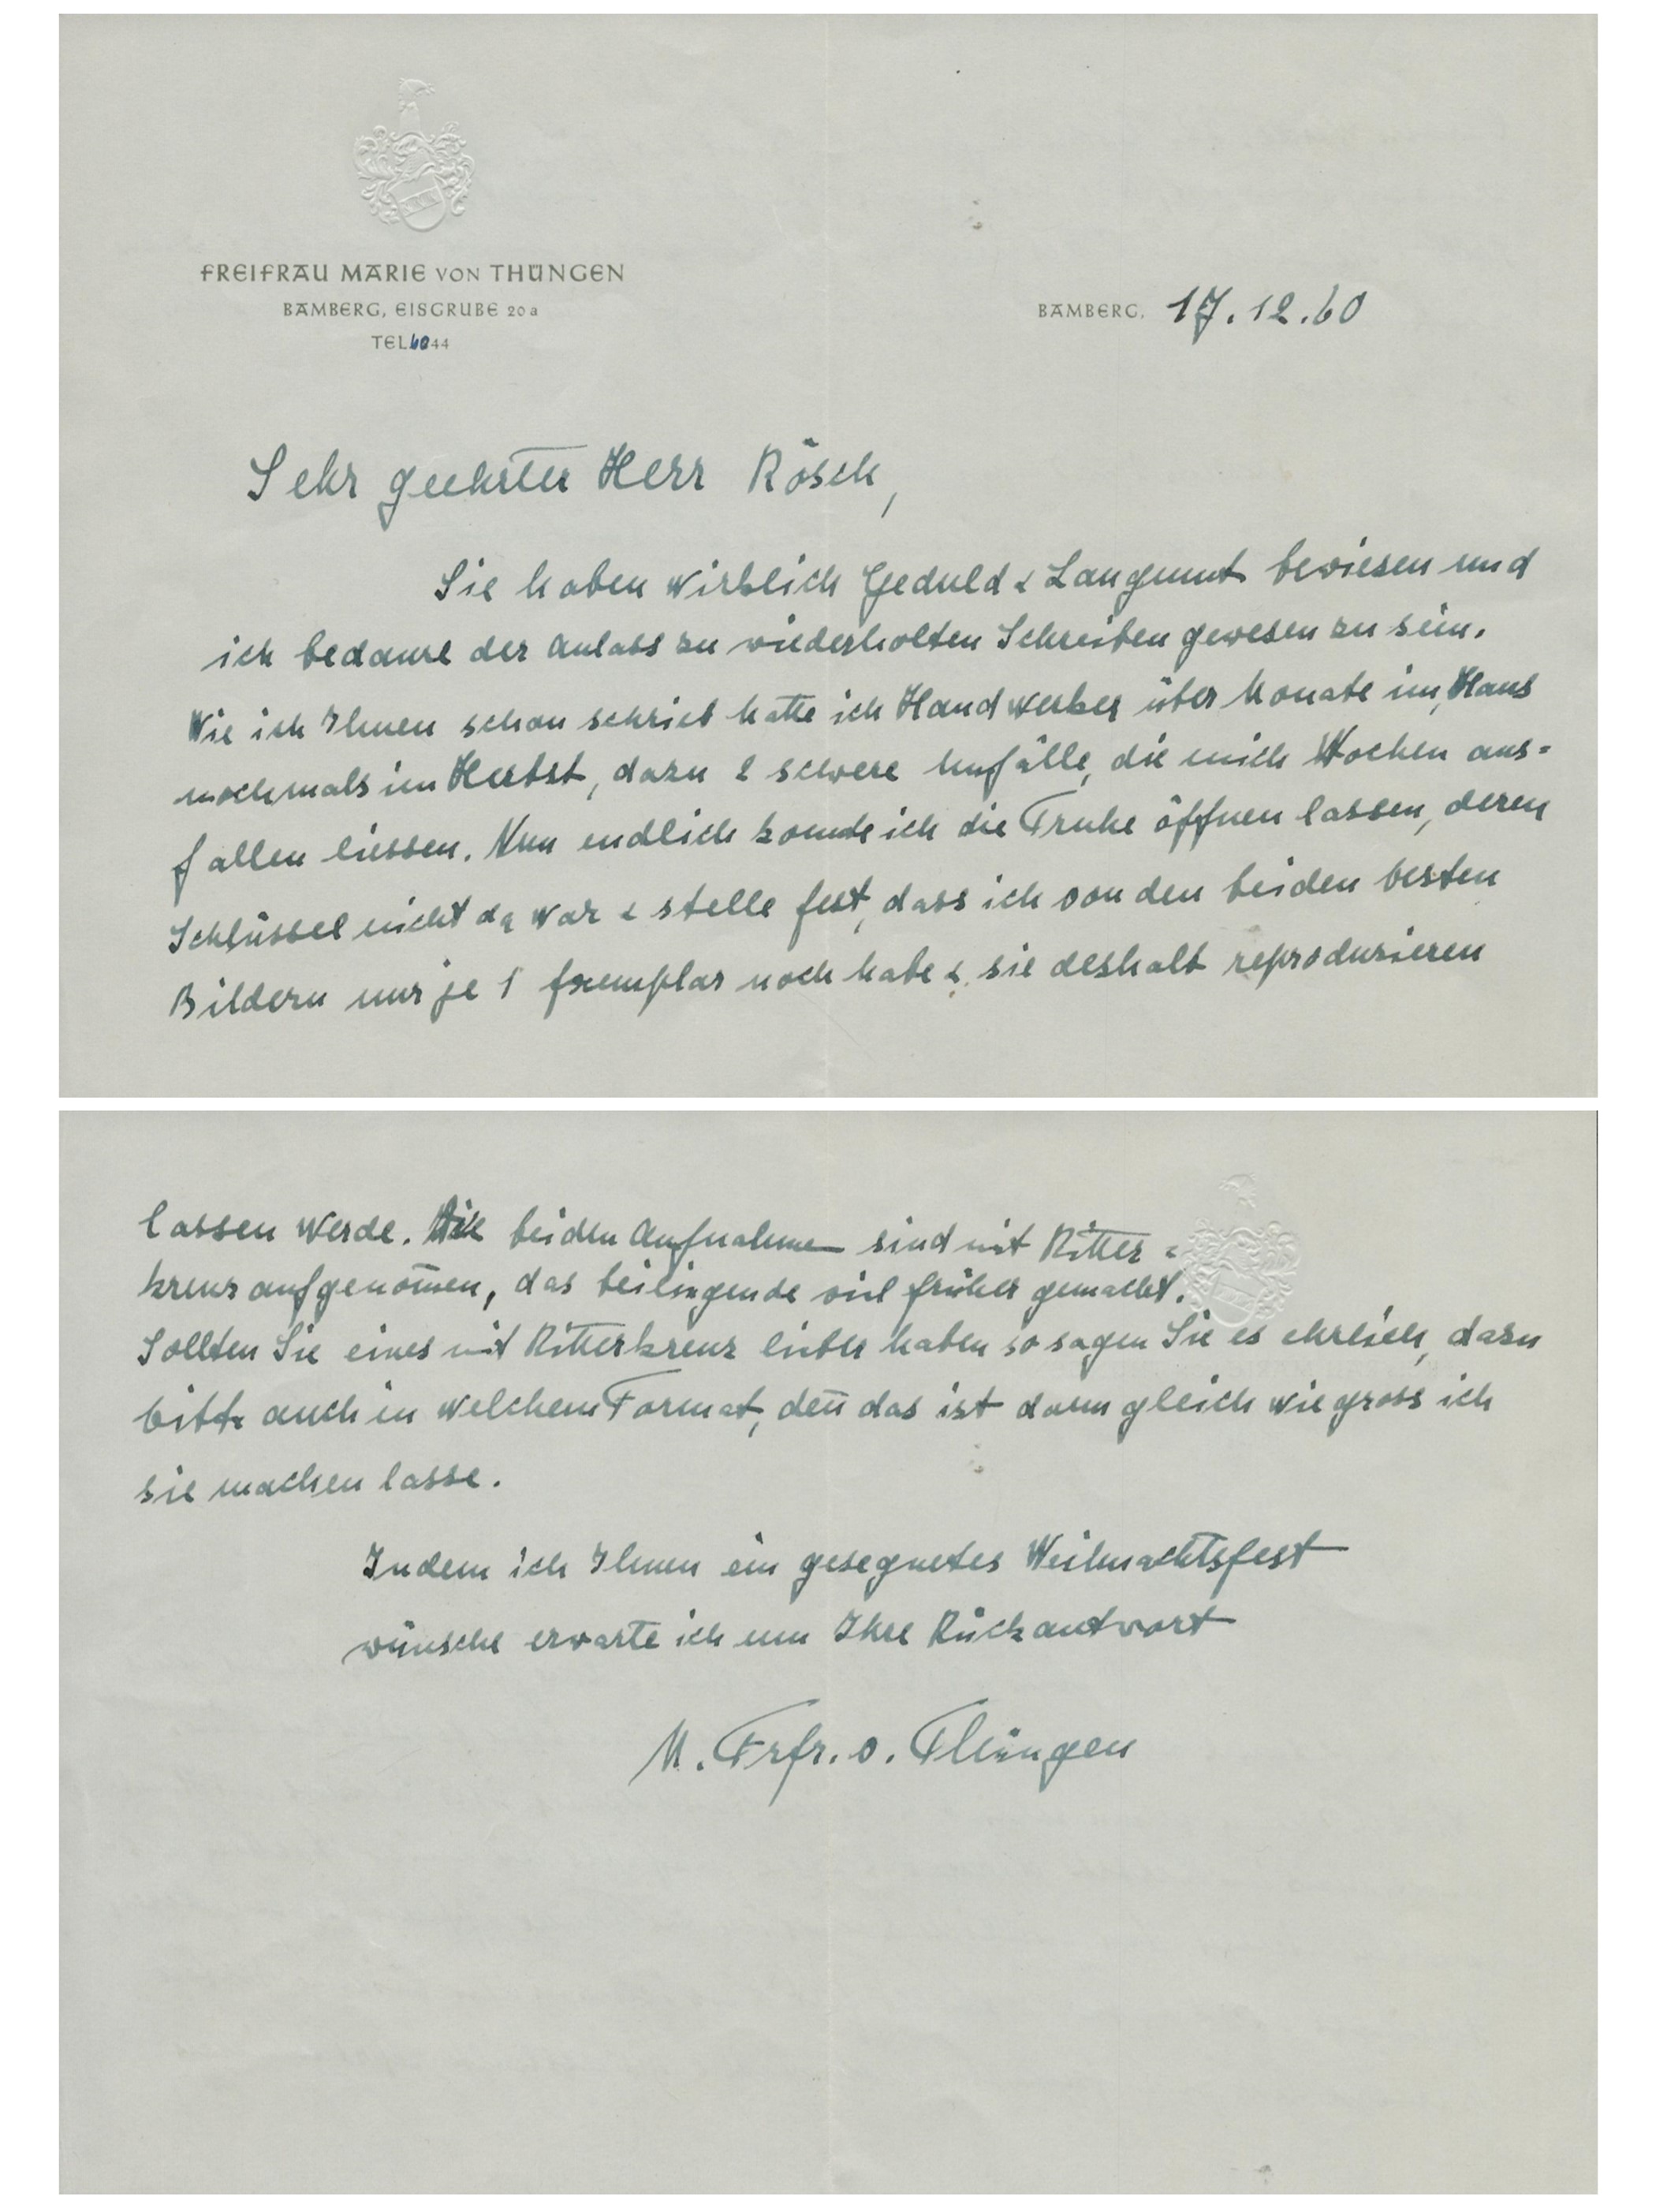 Karl Freiherr von Thüngen (relative) ALS Hand written letter in German dated 17.12.60. Good